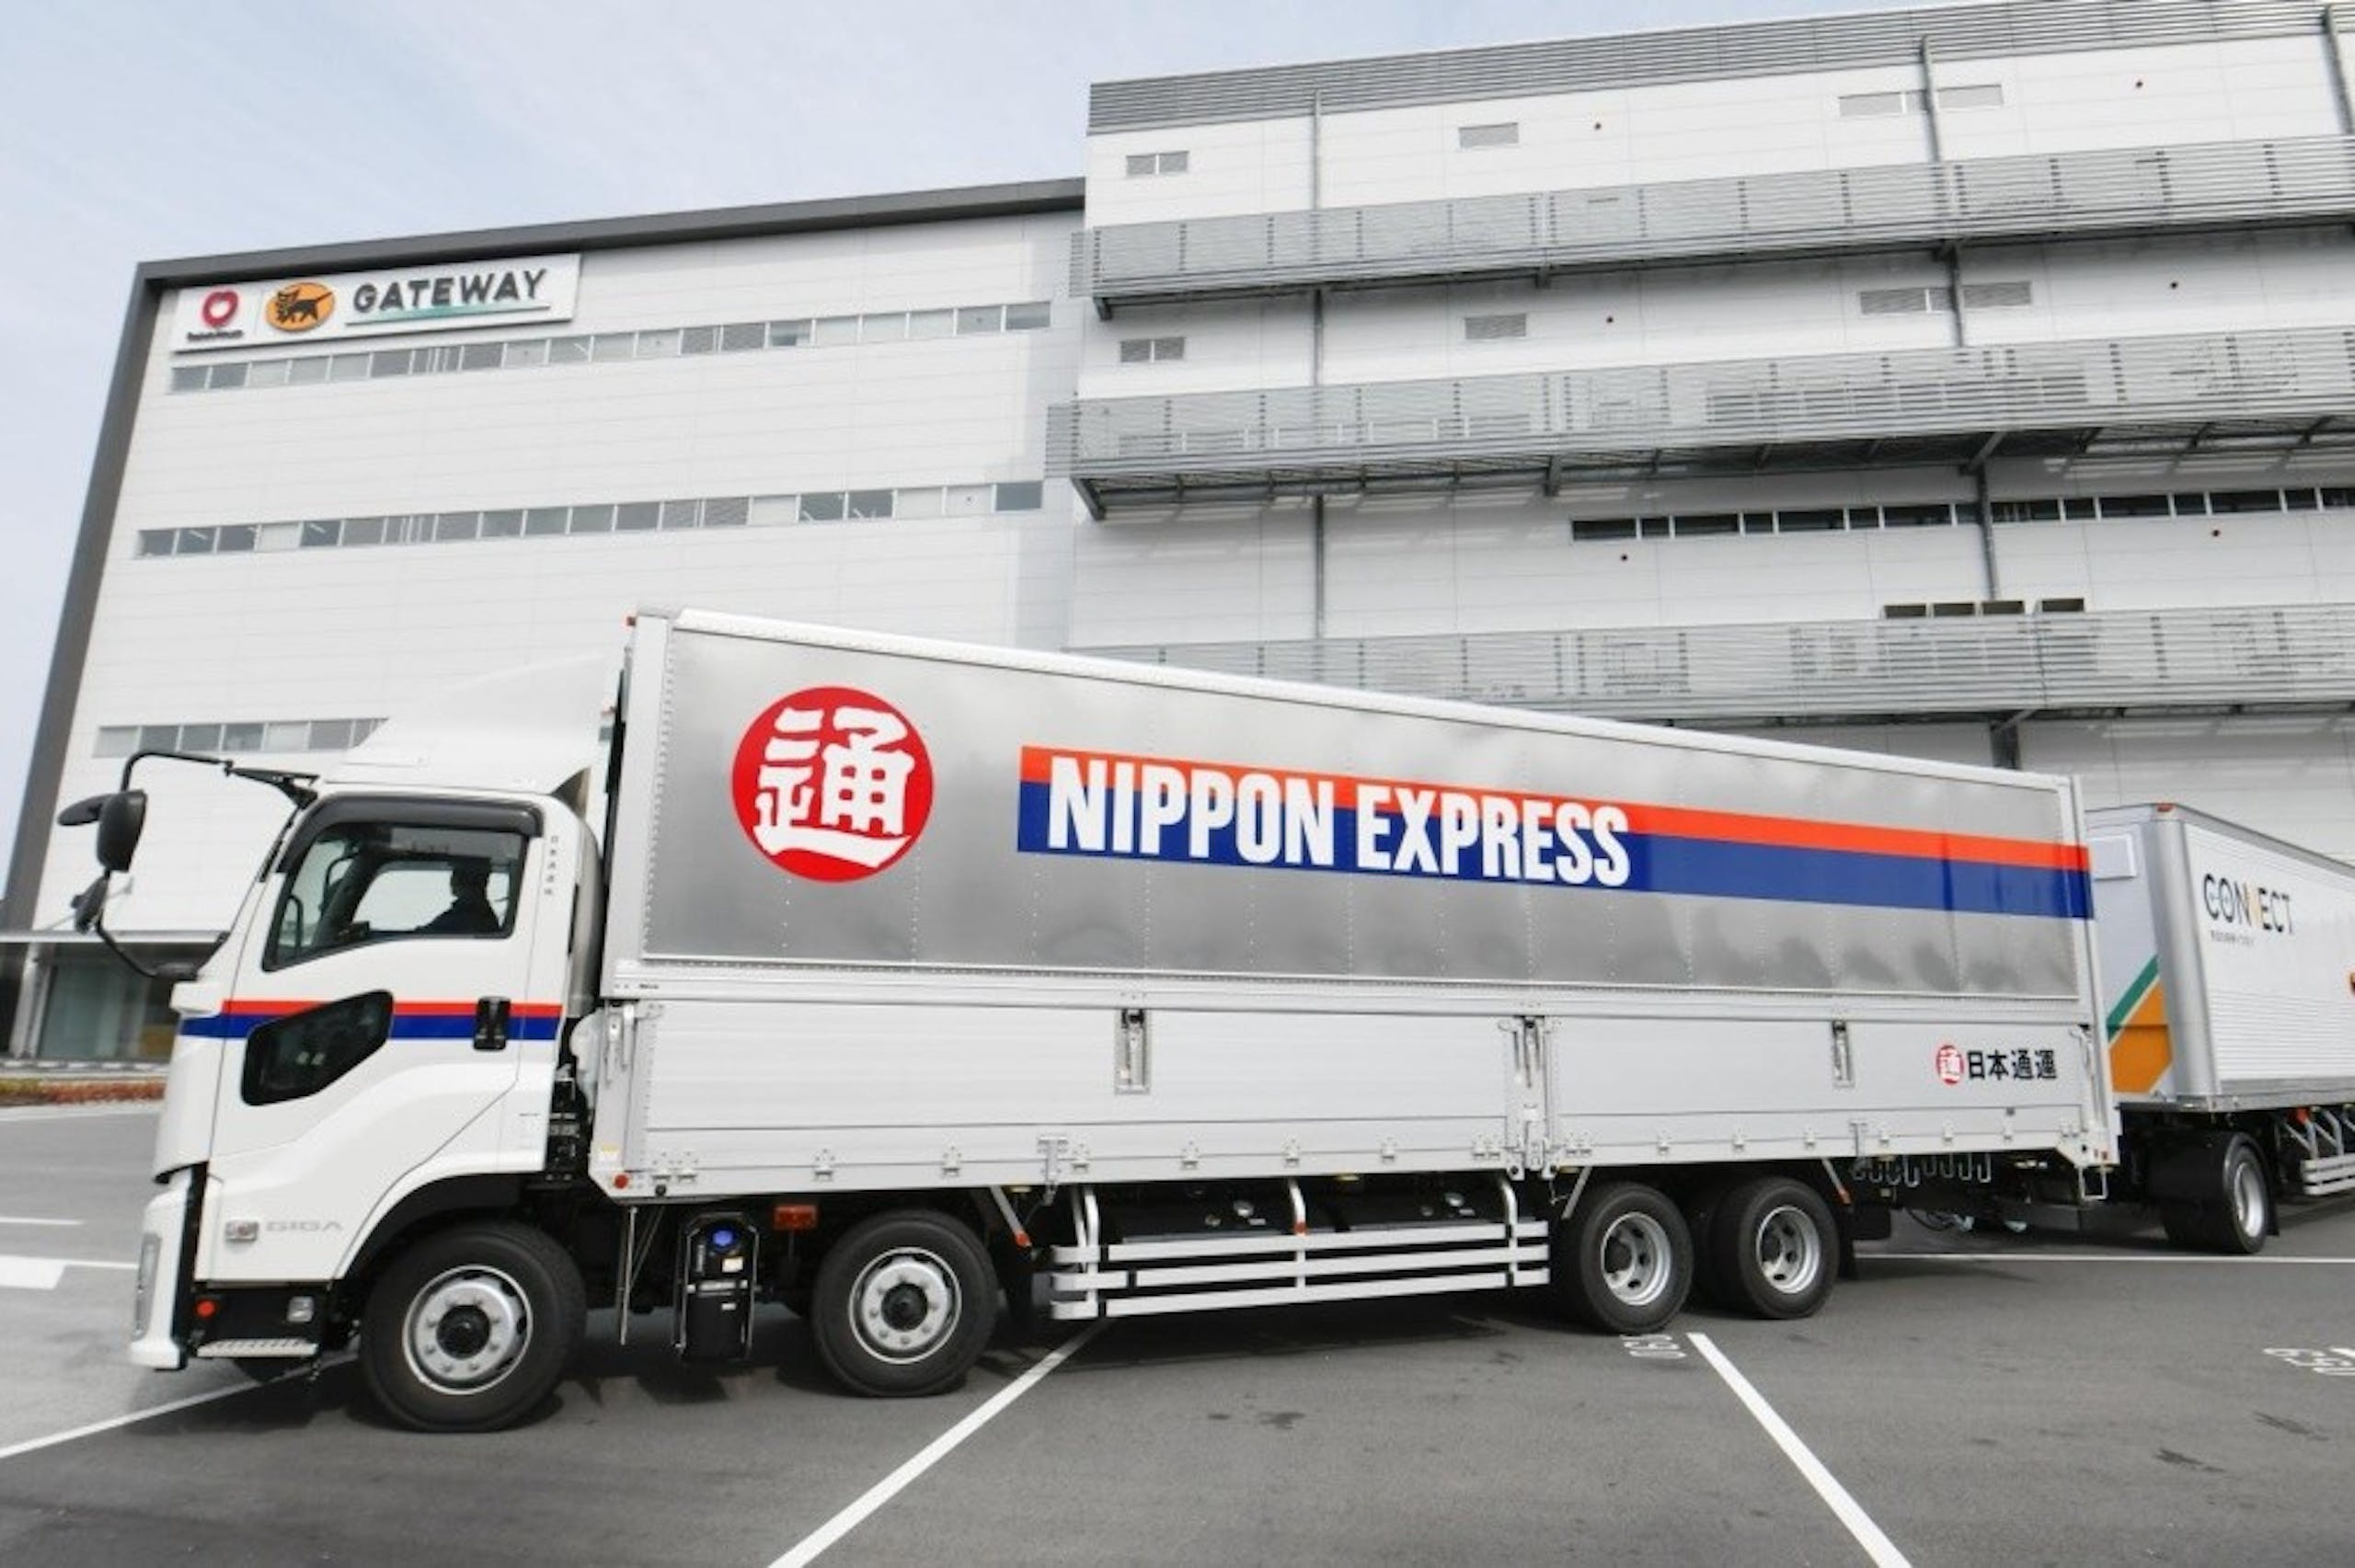 照片中提到了O GATEWAY、鍾、H NIPPON EXPRESS，跟日本快遞、蓋特威技術學院有關，包含了日本快遞、後勤、日本通運美國公司